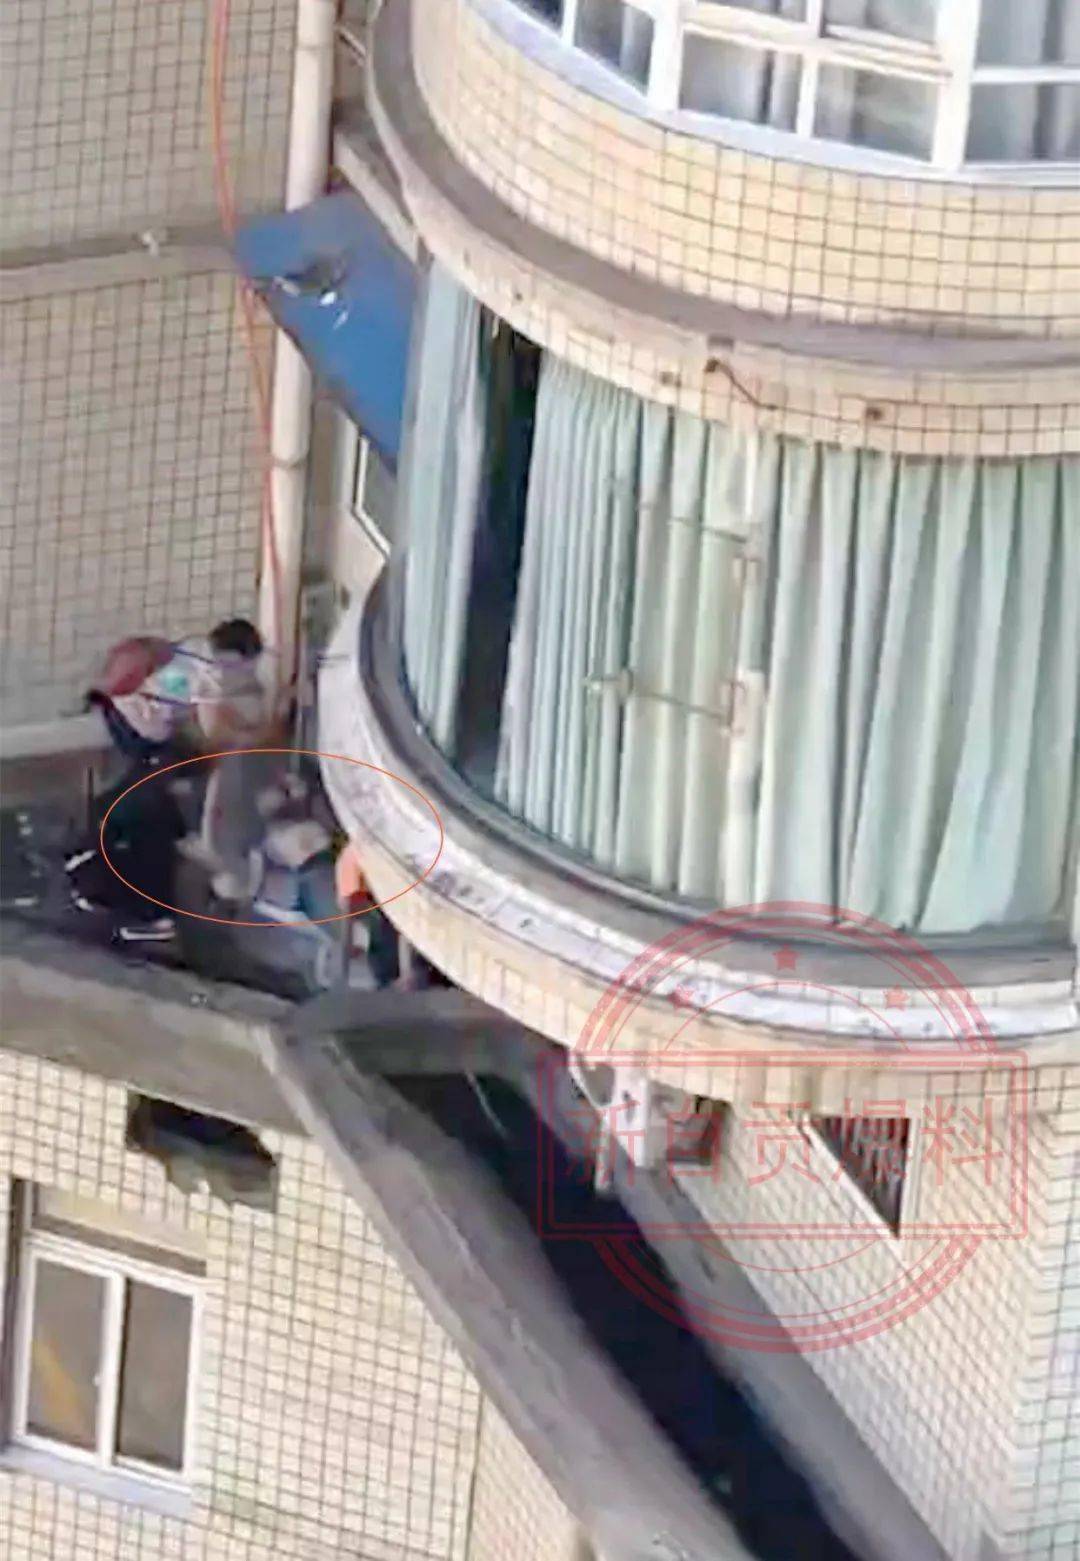 大酒店楼上)一名十几岁的男孩忘记带钥匙,准备翻窗回家时意外坠楼身亡